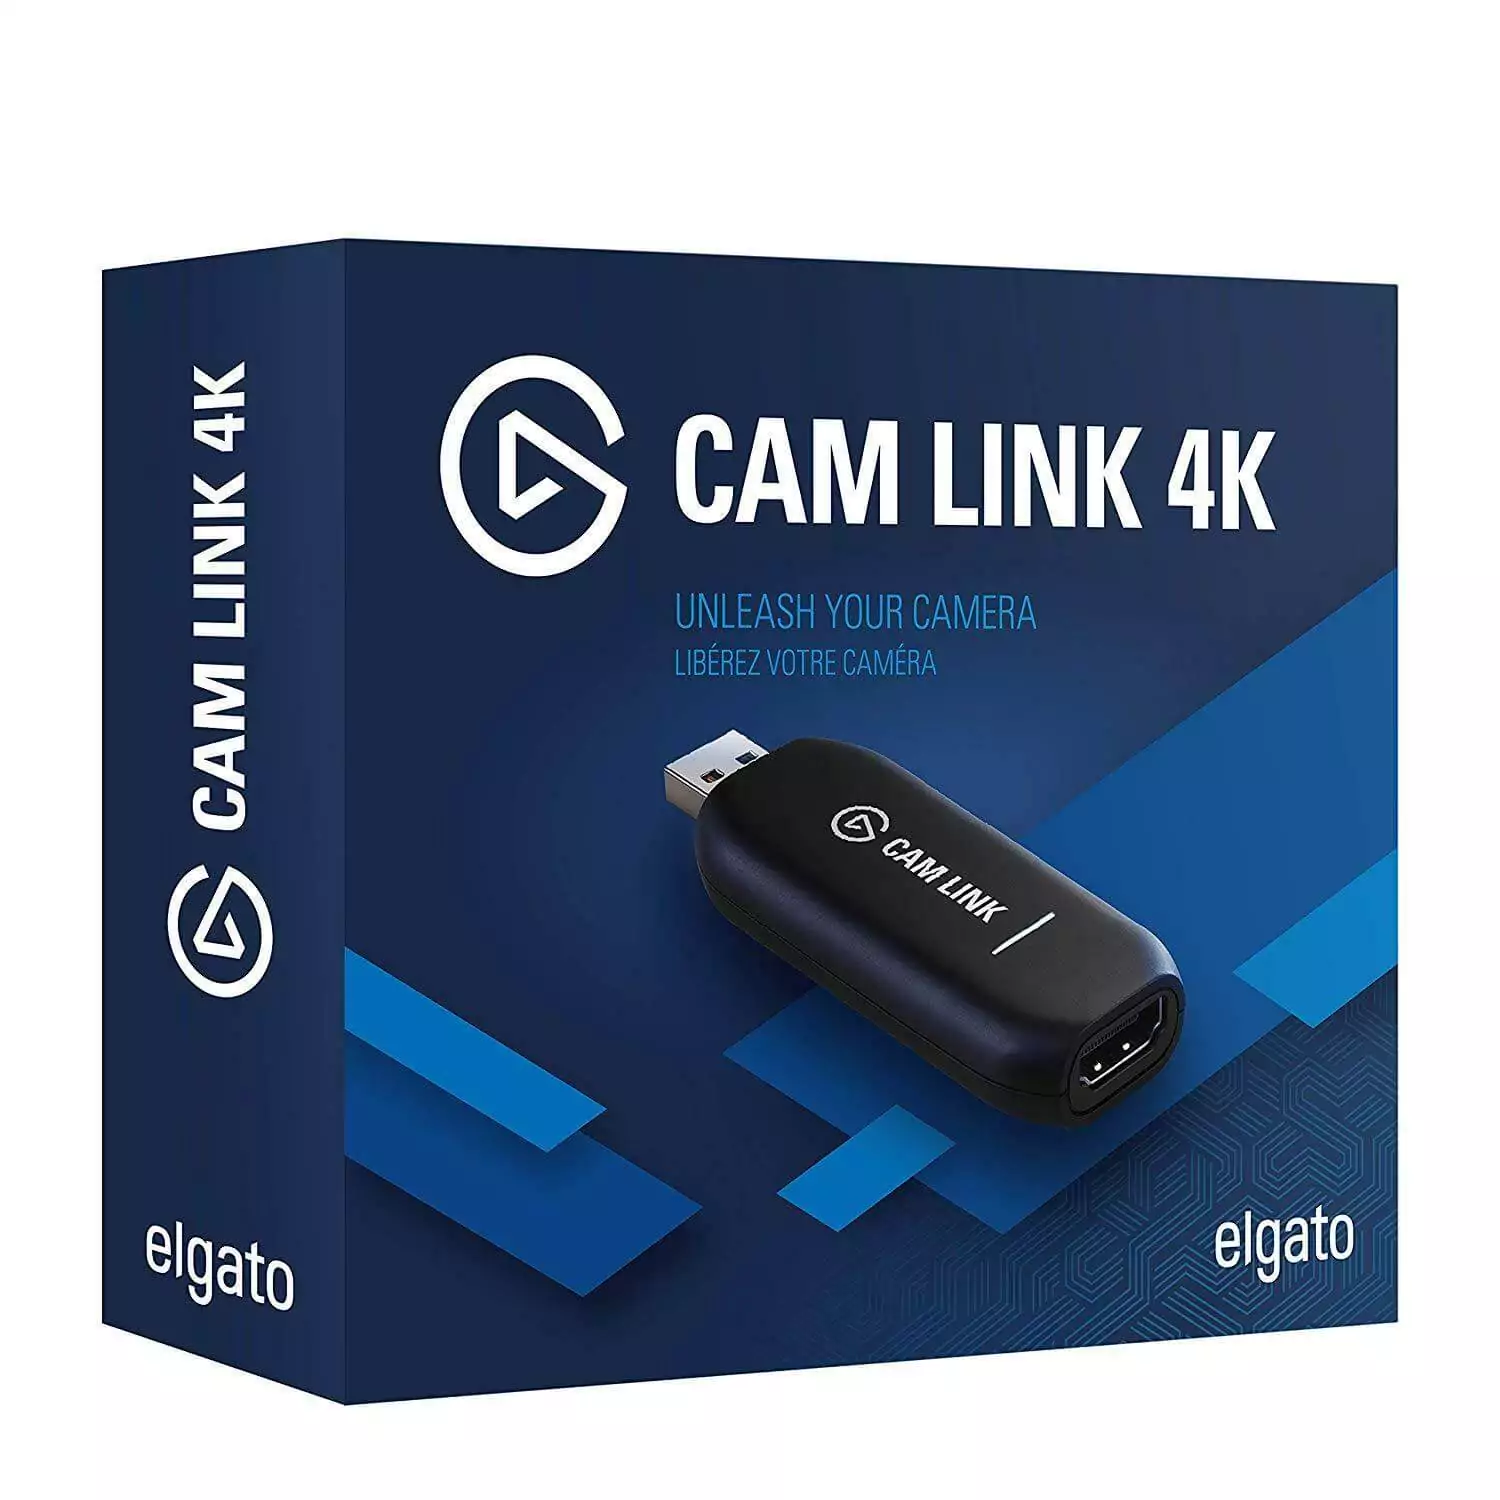 Best-Capture-Cards-for-Streaming-CamLink-4K-1